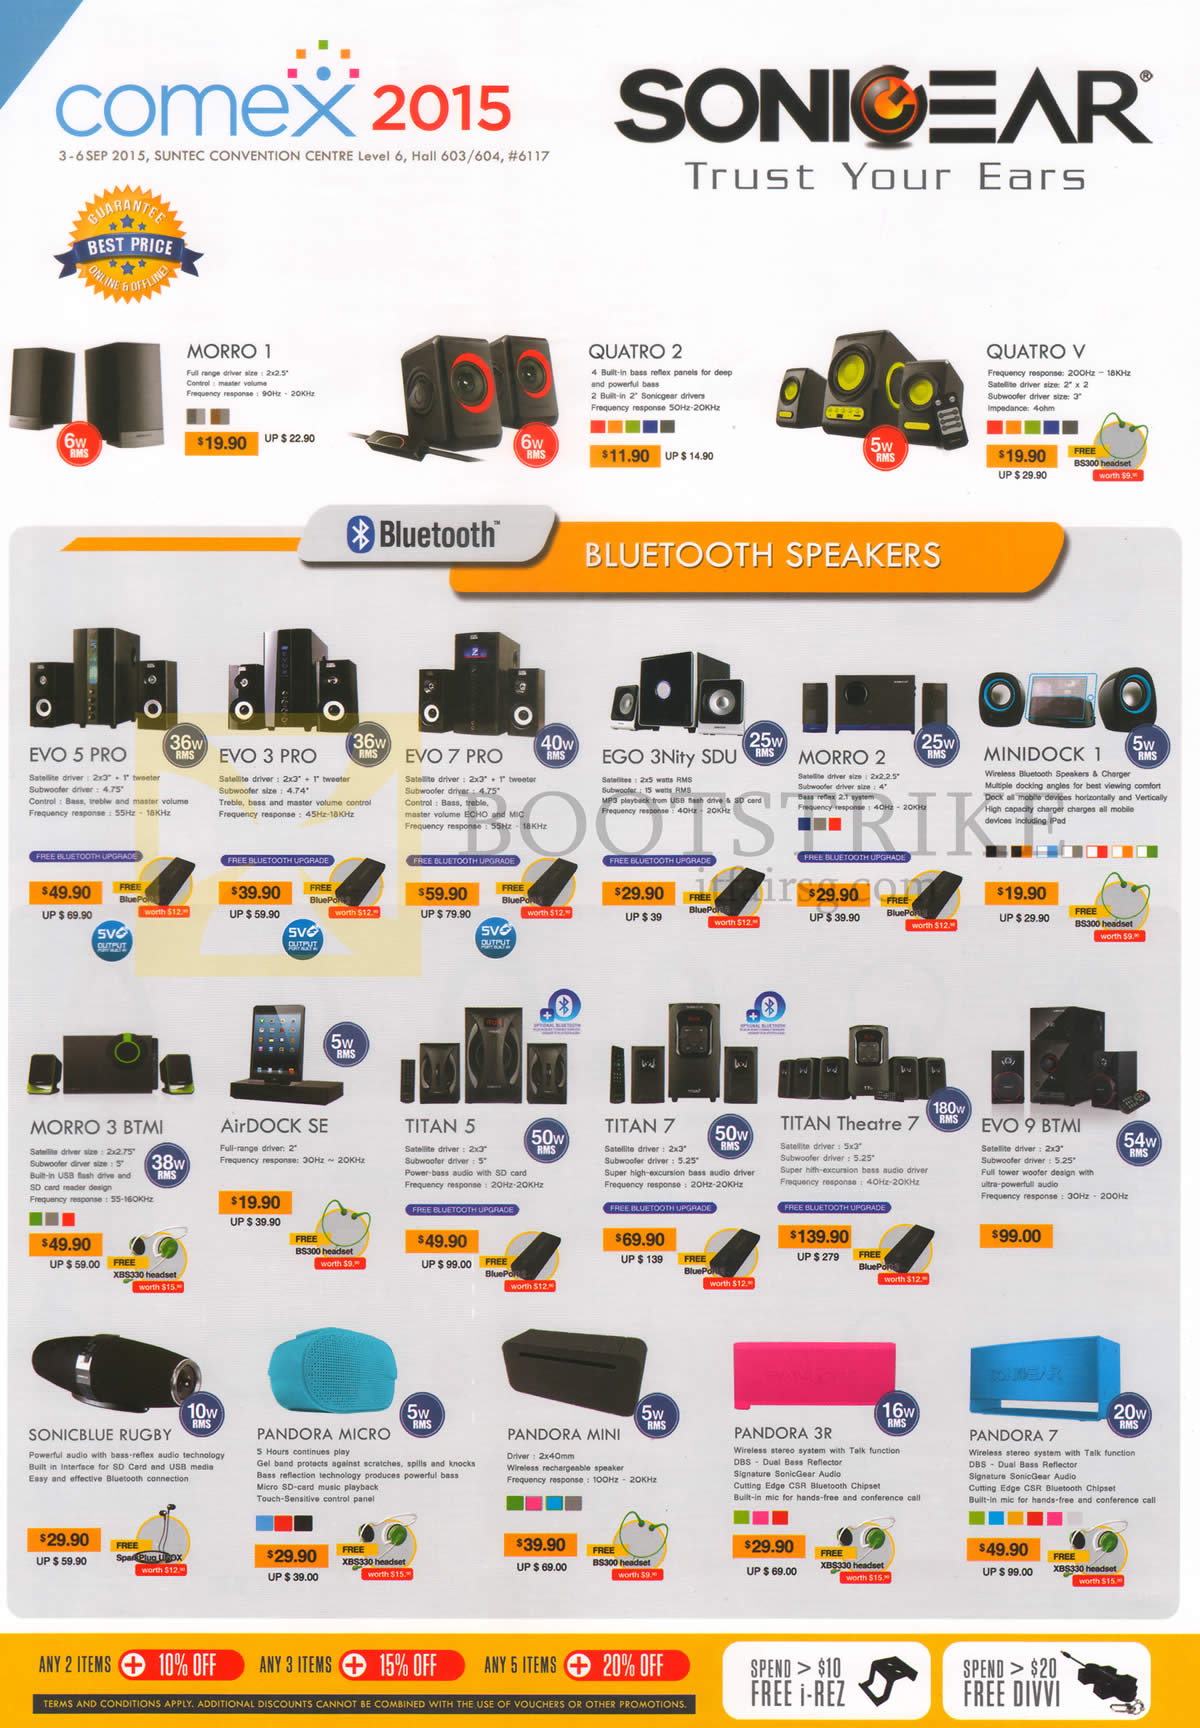 COMEX 2015 price list image brochure of Sonicgear Speakers Bluetooth Morro 1, Quatro 2,V, Evo 5, 3 Pro, Ego 3 Nity SDU, Morro 2, Minidock 1, BTMI, AirDock SE, Titan 5, 7, Theatre 7, Sonicblue Rugby, Pandora Micro, Mini, 3R, 7